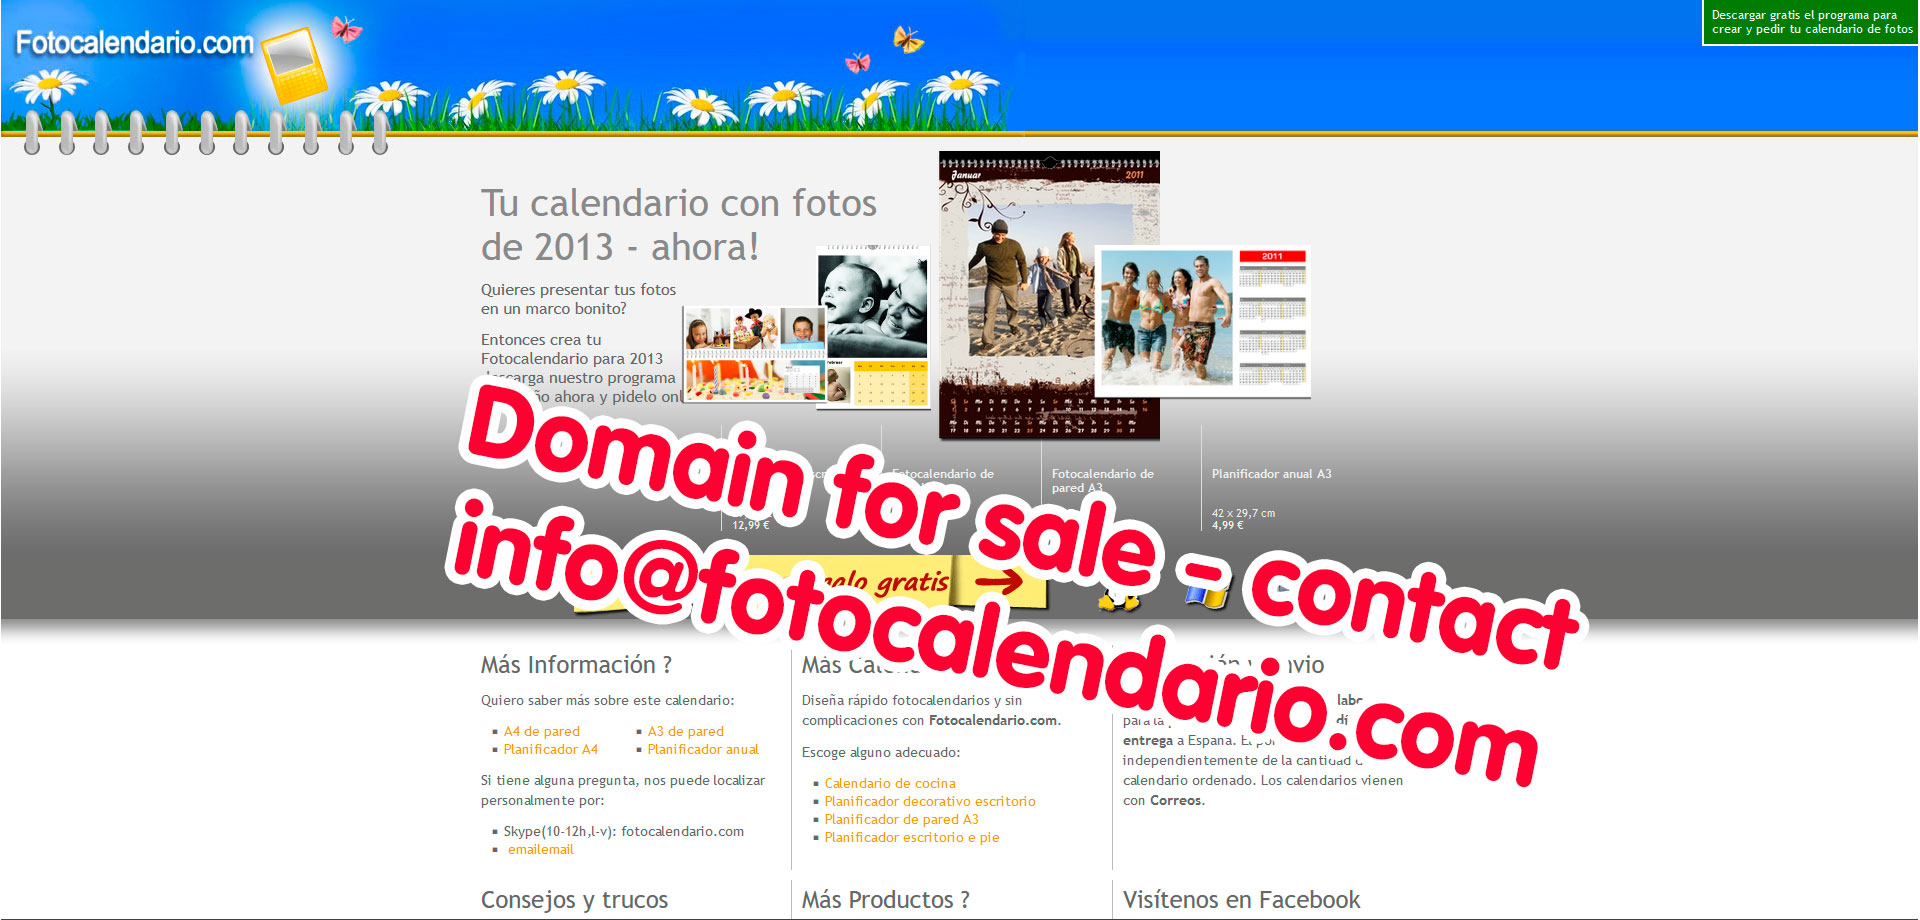 Domain for sale fotocalendario.com